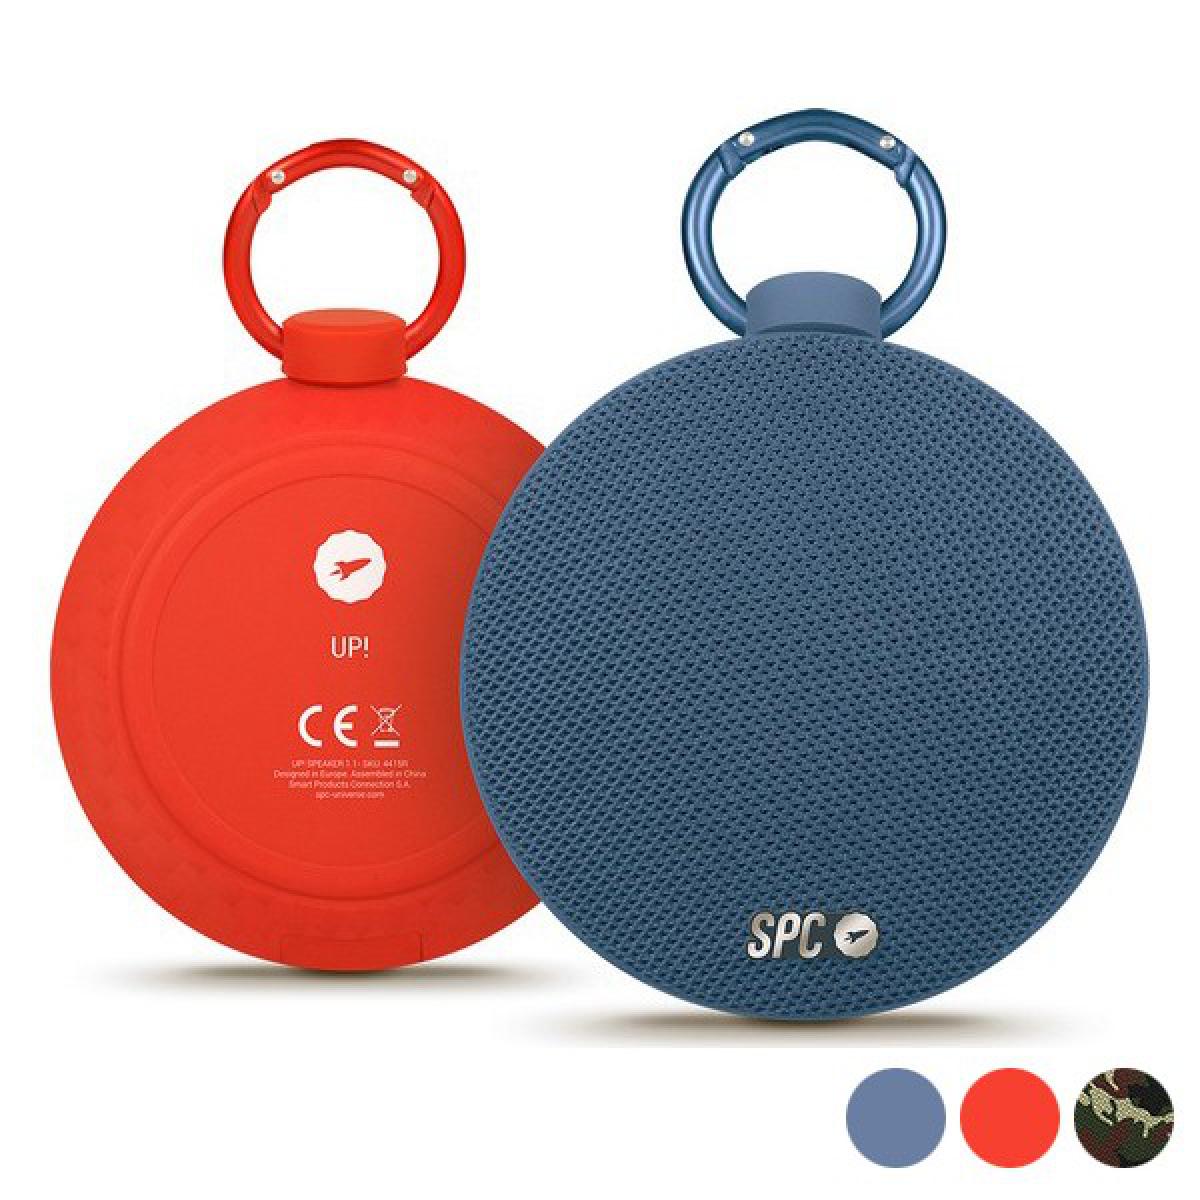 Totalcadeau - Haut-parleur Bluetooth portables 5W Couleur - Bleu - Barre de son